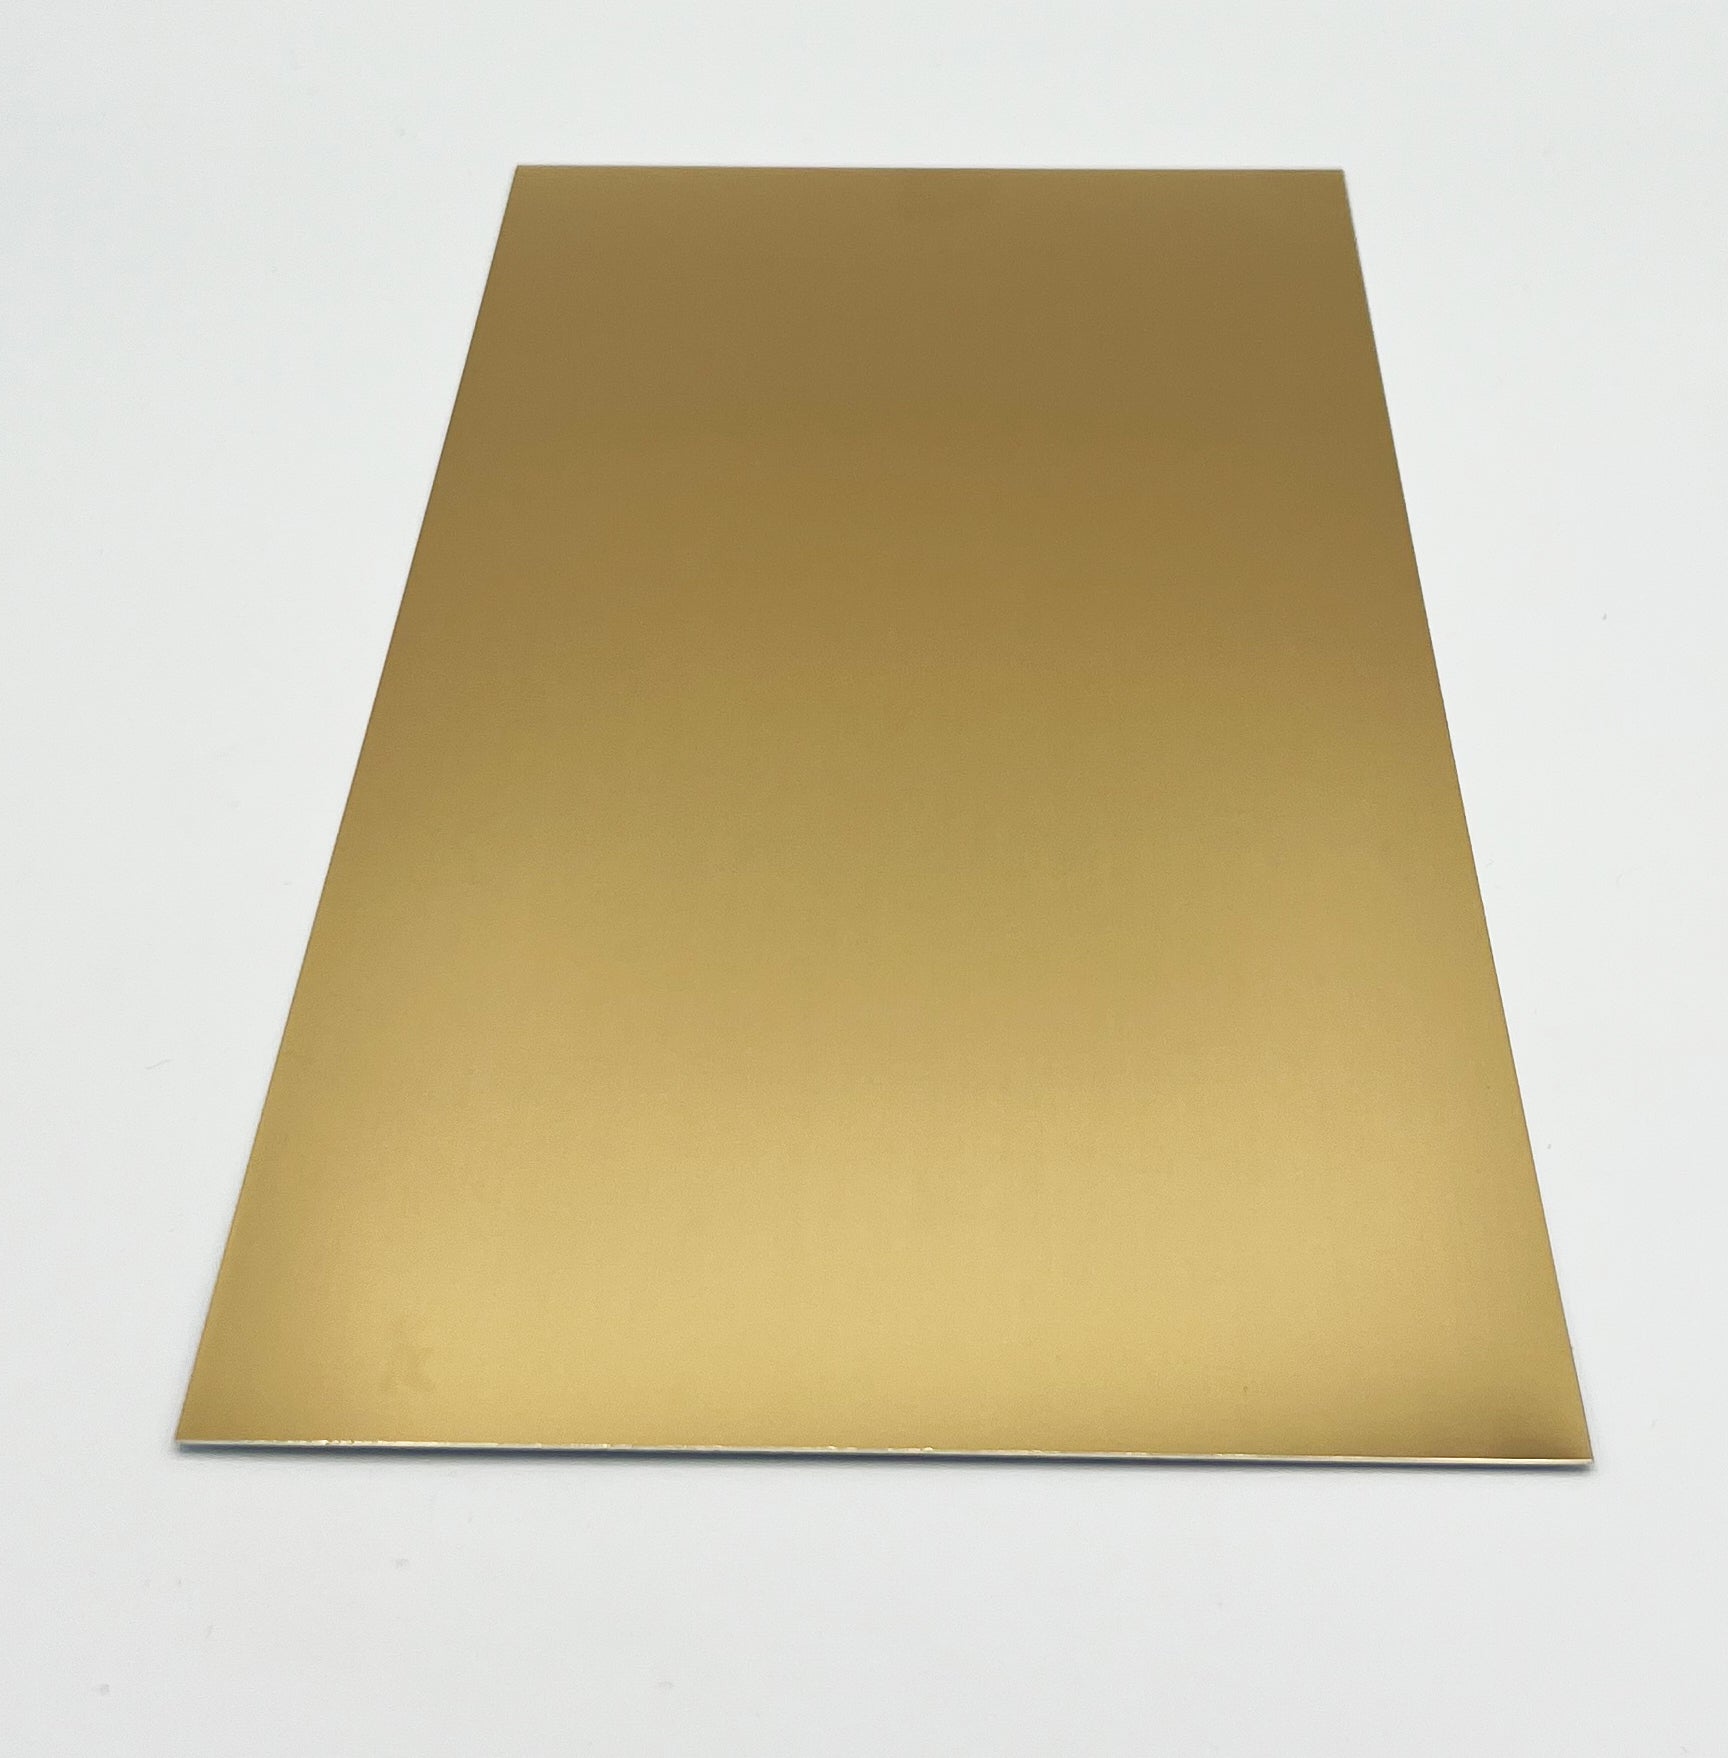 Aluminiumplatte in verschiedenen Größen, Gold, spiegelnd - Sublishop.net GmbH